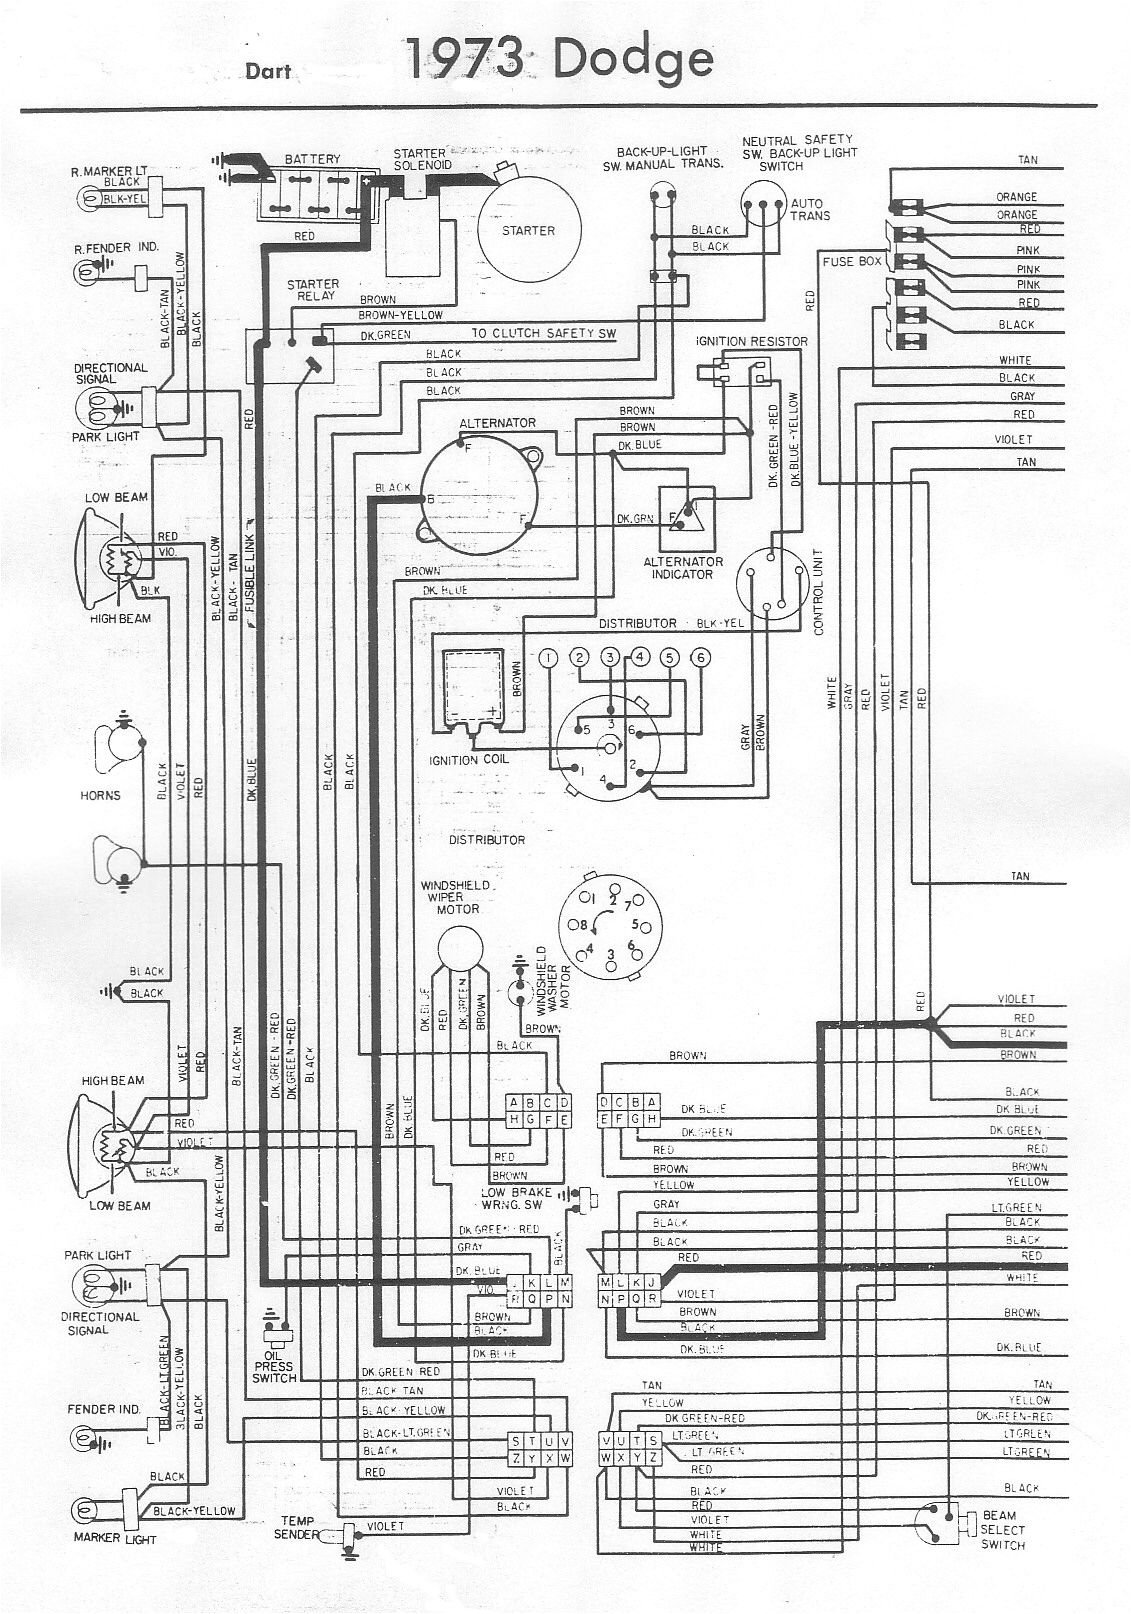 1974 Dodge Dart Wiring Diagram 1973 Dodge Challenger Wiring Diagram Pro Wiring Diagram